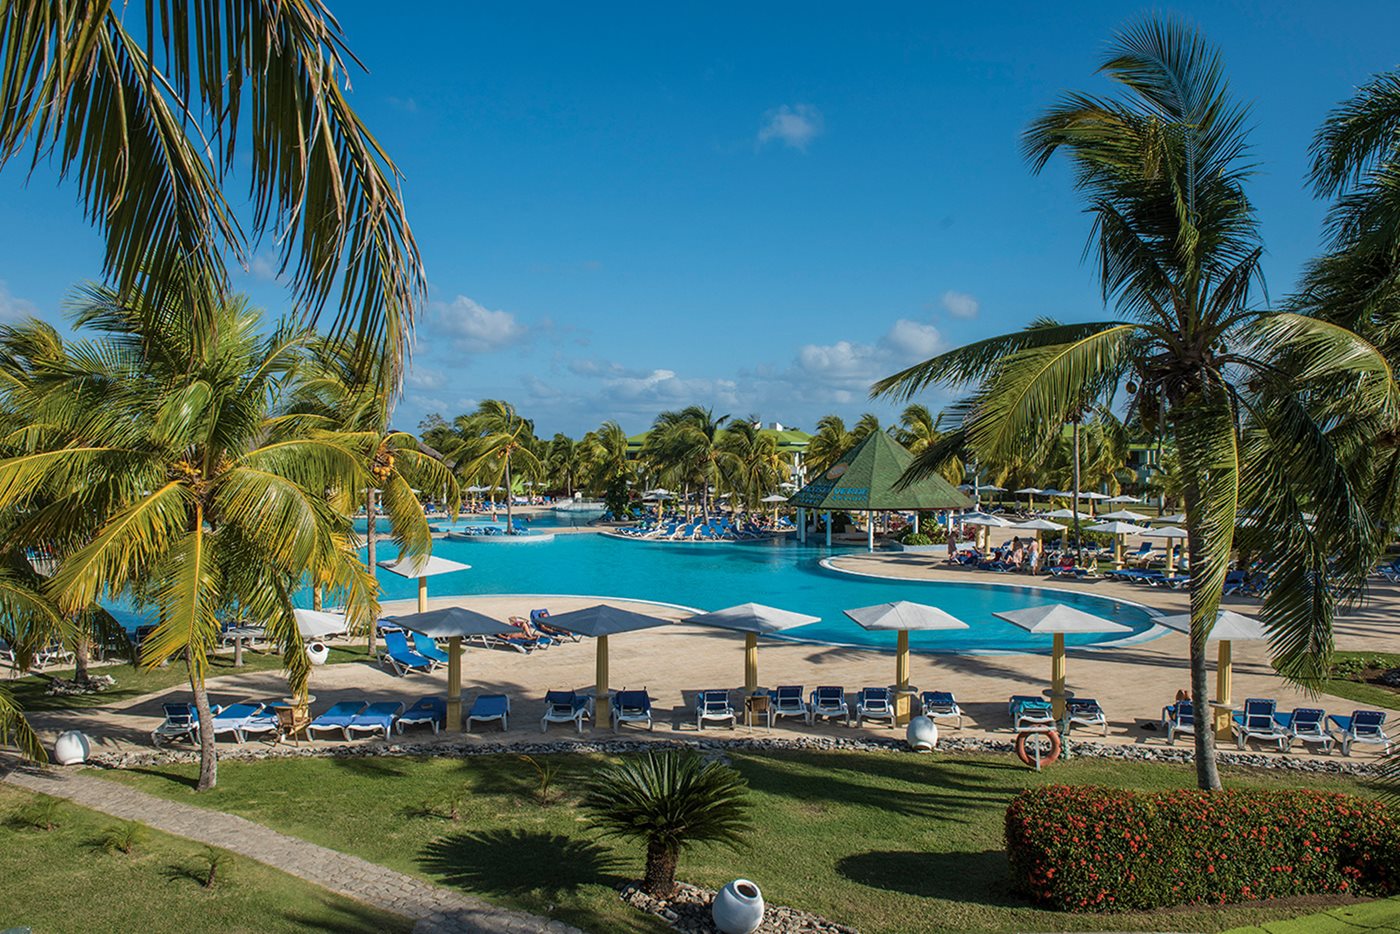 Hotel Playa Costa Verde - Holguin | Transat